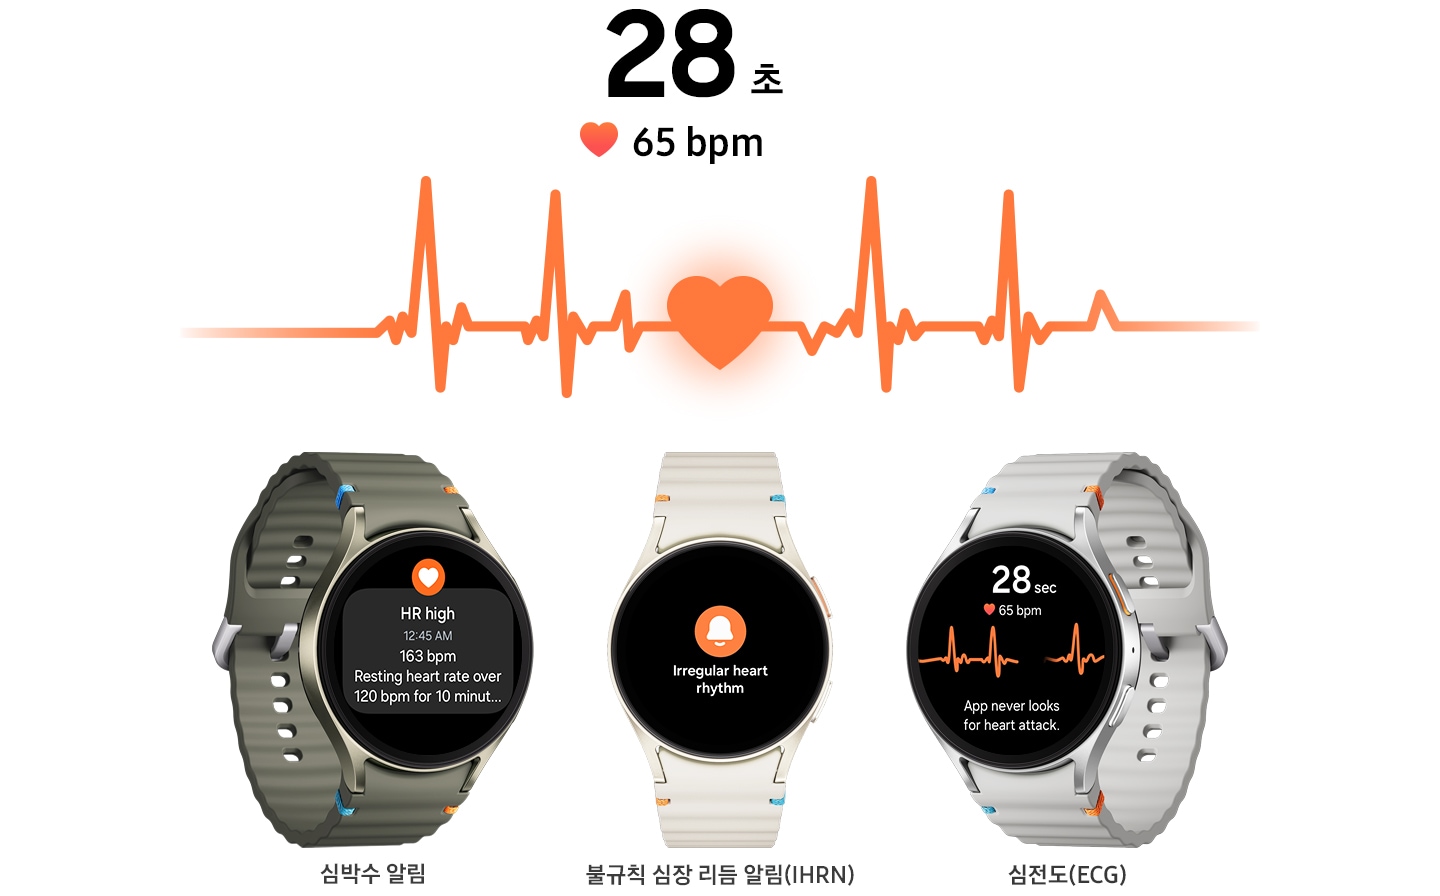 갤럭시 워치7 3대가 정면을 향해 놓여 있고 심박수 경고 알림, 불규칙 심장 리듬 알림, 심전도 등 각기 다른 심장 모니터링 기능이 실행되고 있습니다. 기기 위에는 “28초” 텍스트, 움직이는 심박수 선 그래프, “65 bpm” 텍스트가 함께 표시됩니다. 